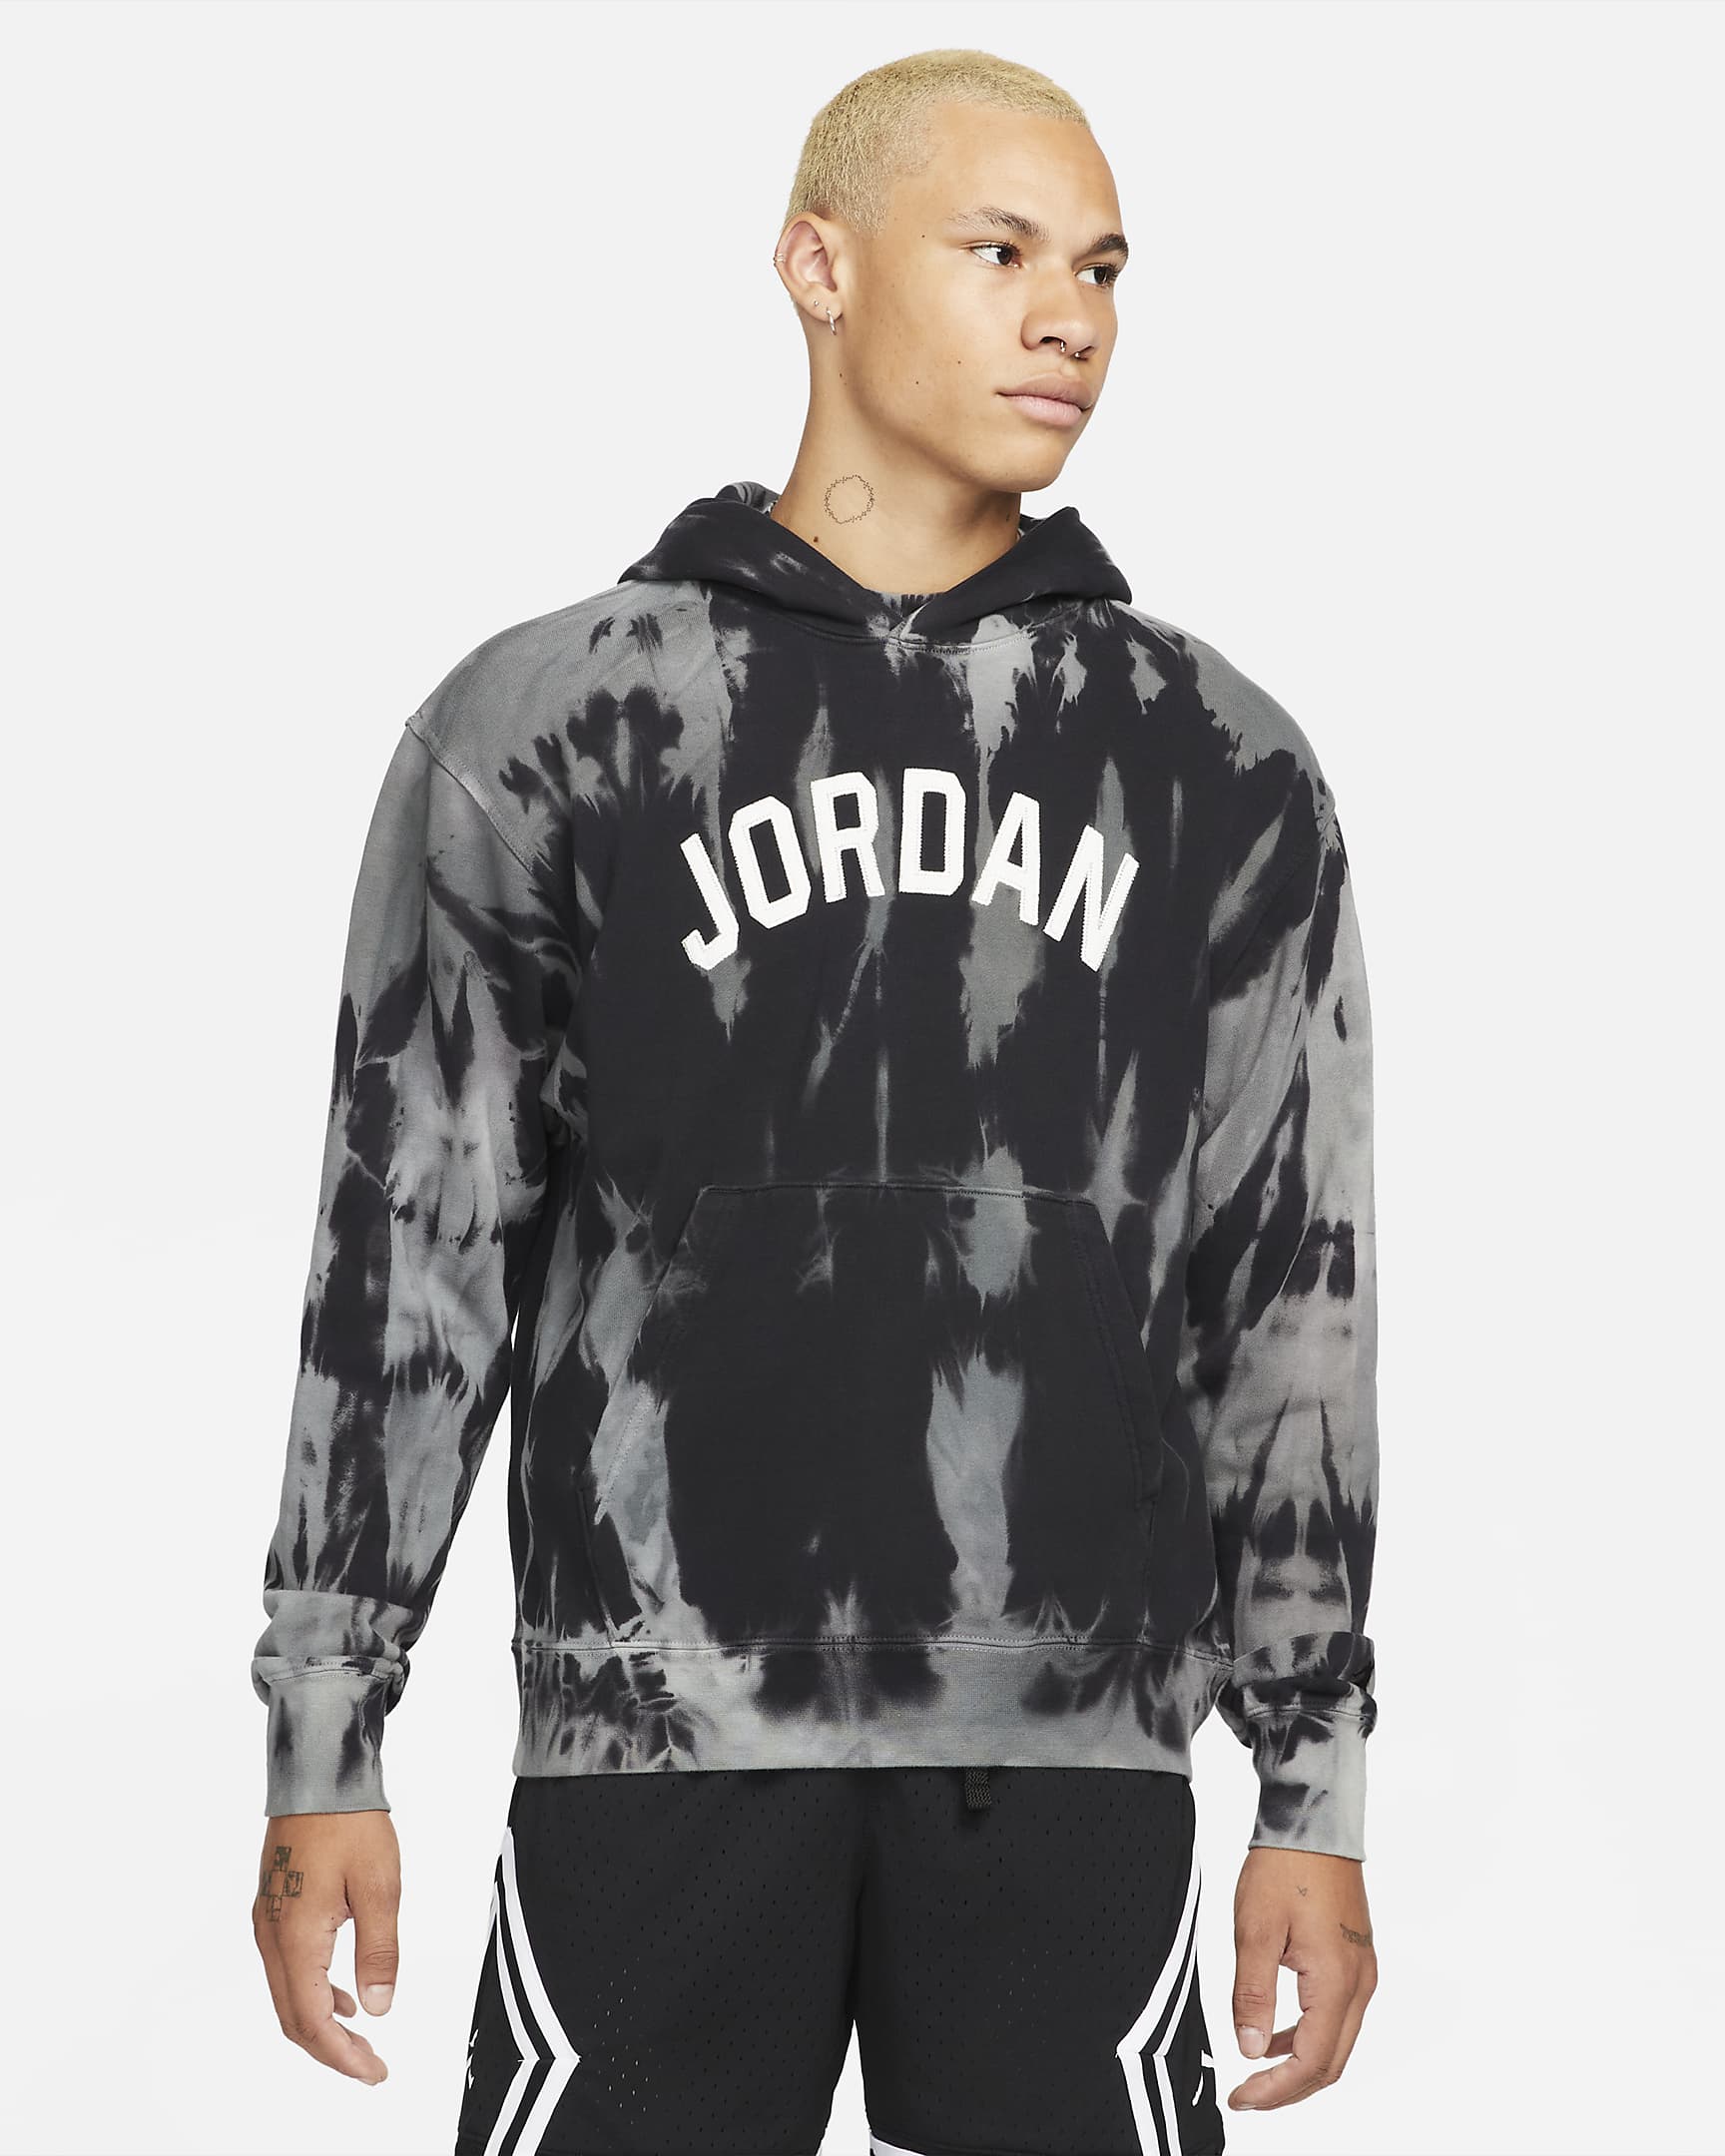 jordan-sport-dna-statement-fleece-hoodie-RJtdzG.png